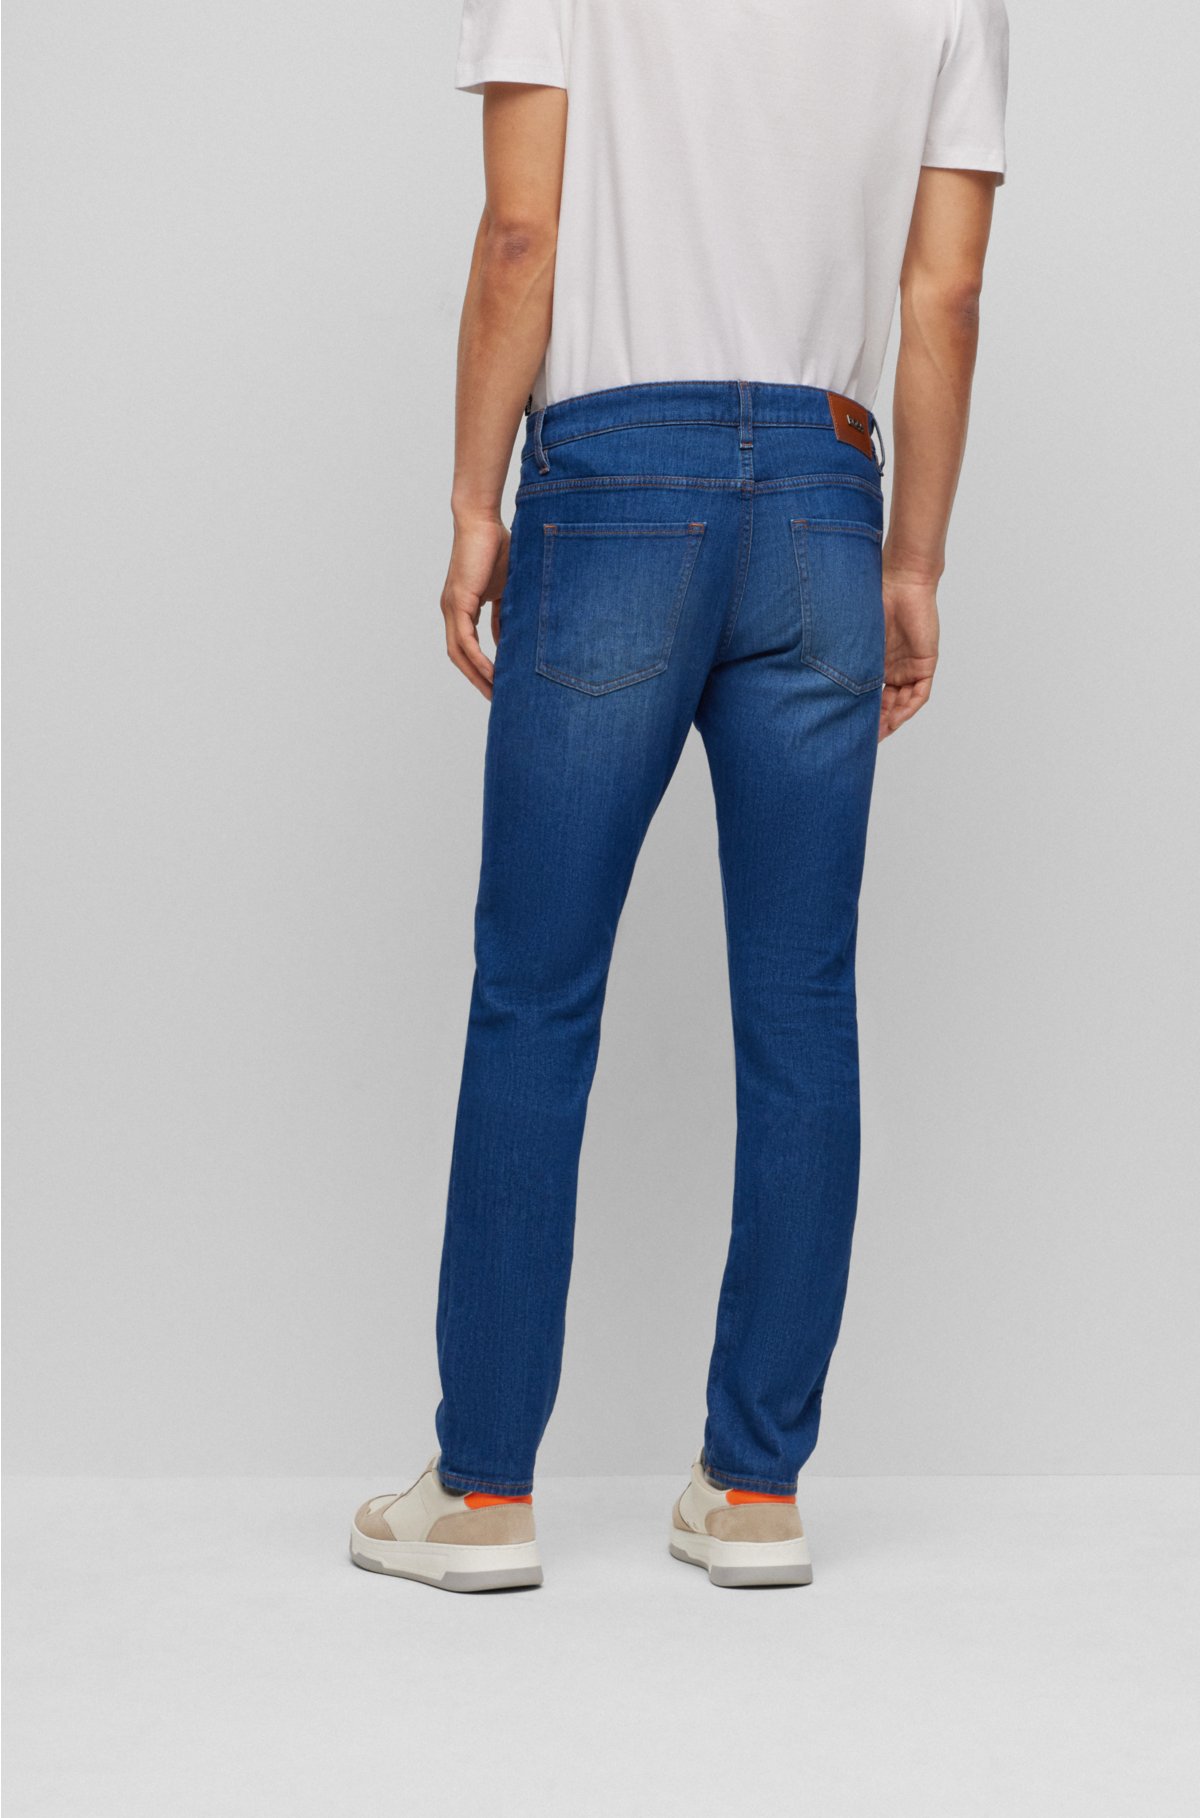 Chiquetosa Calça Jeans Azul J Brand Original